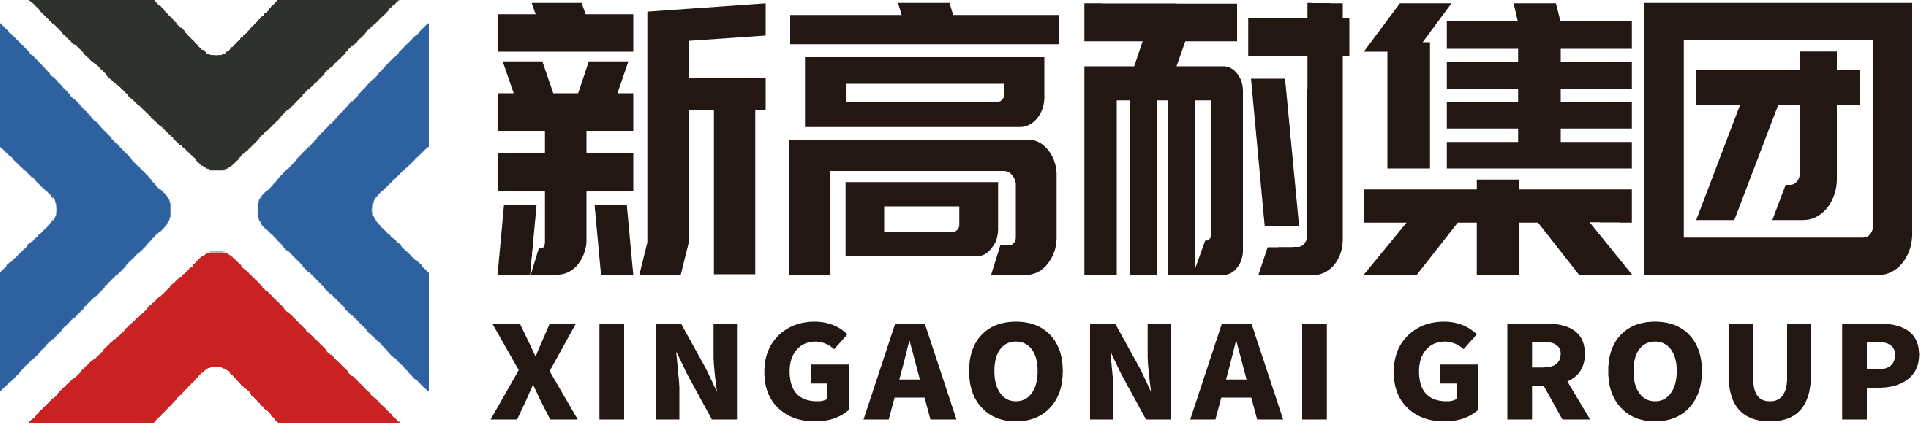 Xingaonai Heavy Industry Group Co., Ltd.logo